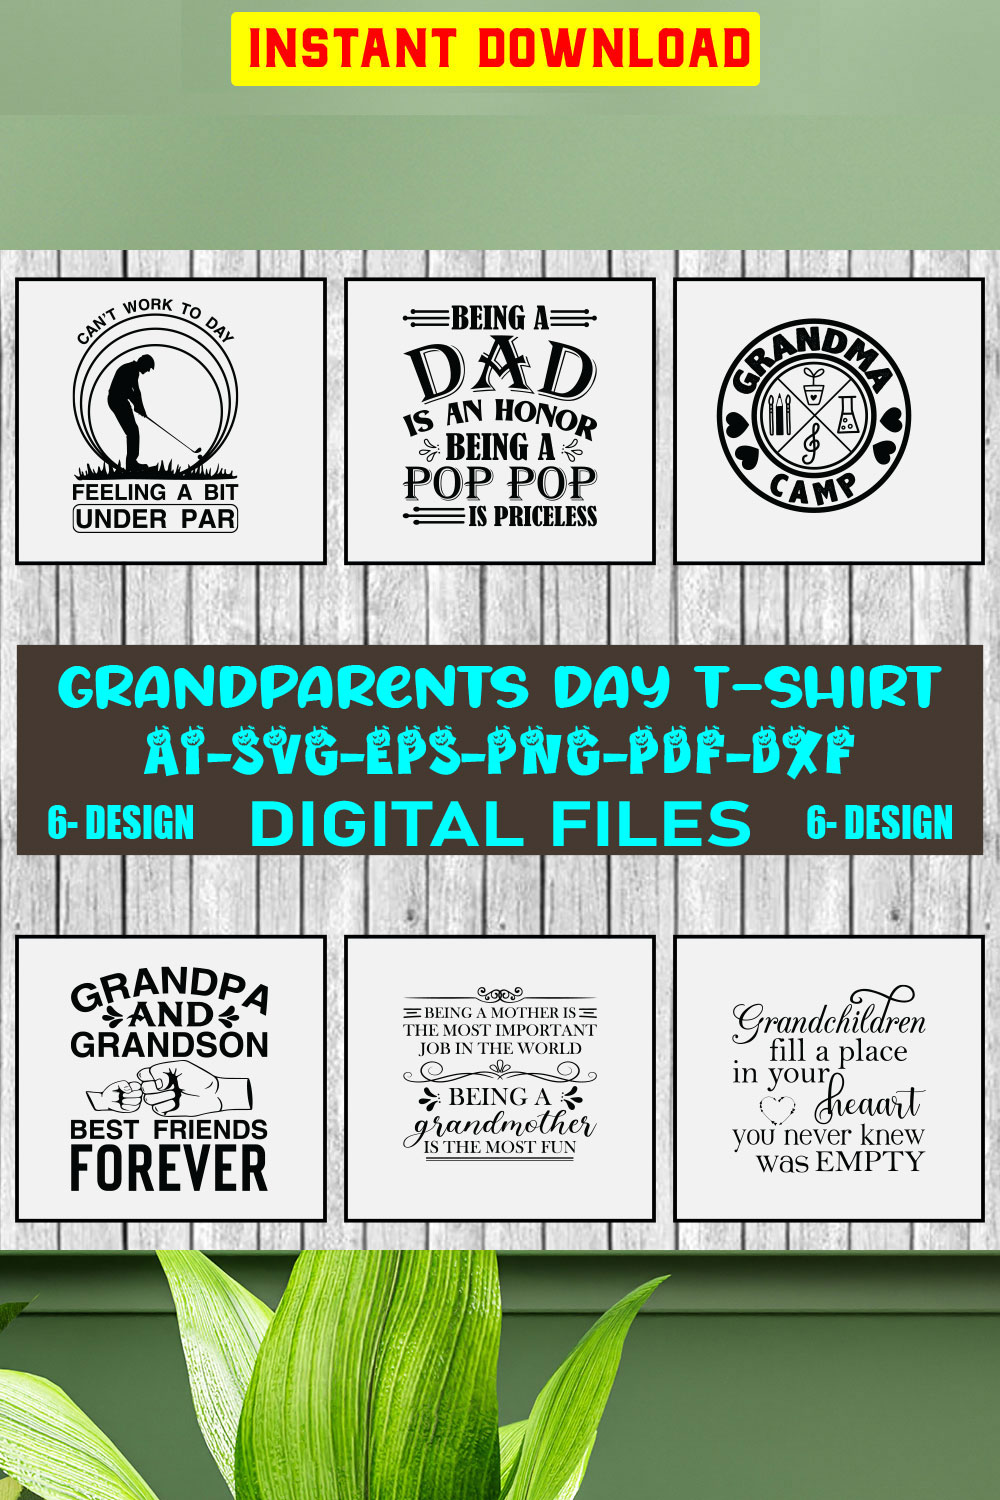 Grandparents Day T-shirt Design Bundle Vol-1 pinterest preview image.